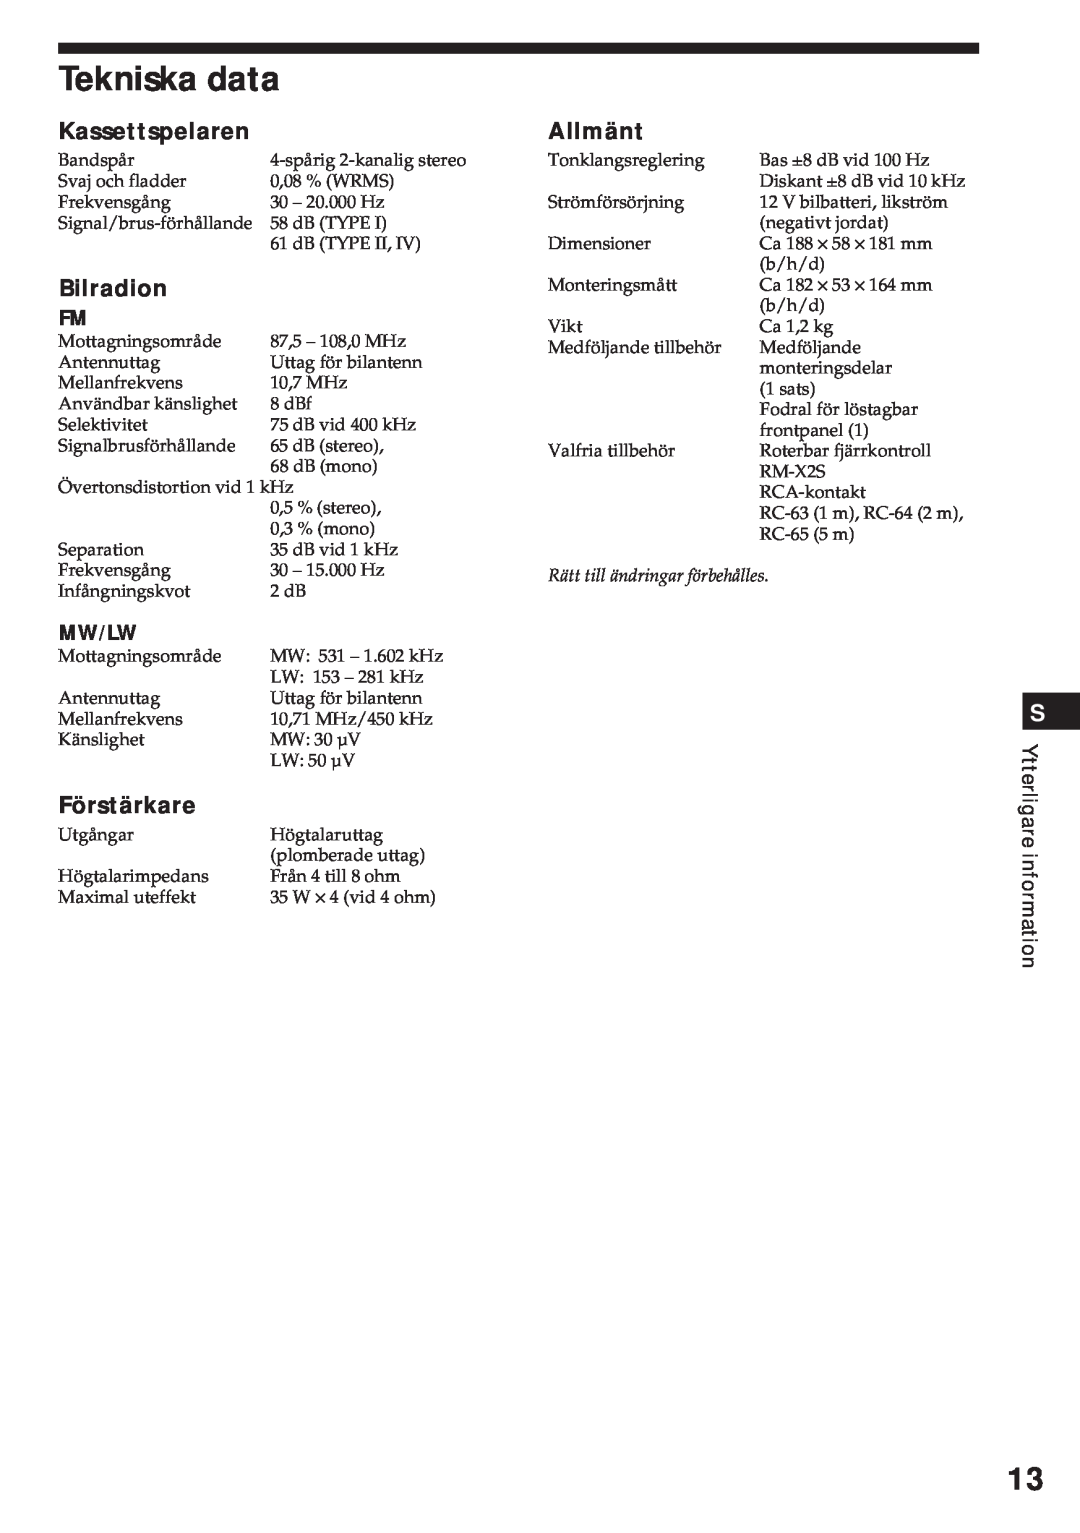 Sony XR-3750 Tekniska data, Kassettspelaren, Bilradion, Förstärkare, Allmänt, Mw/Lw, Ytterligare information 